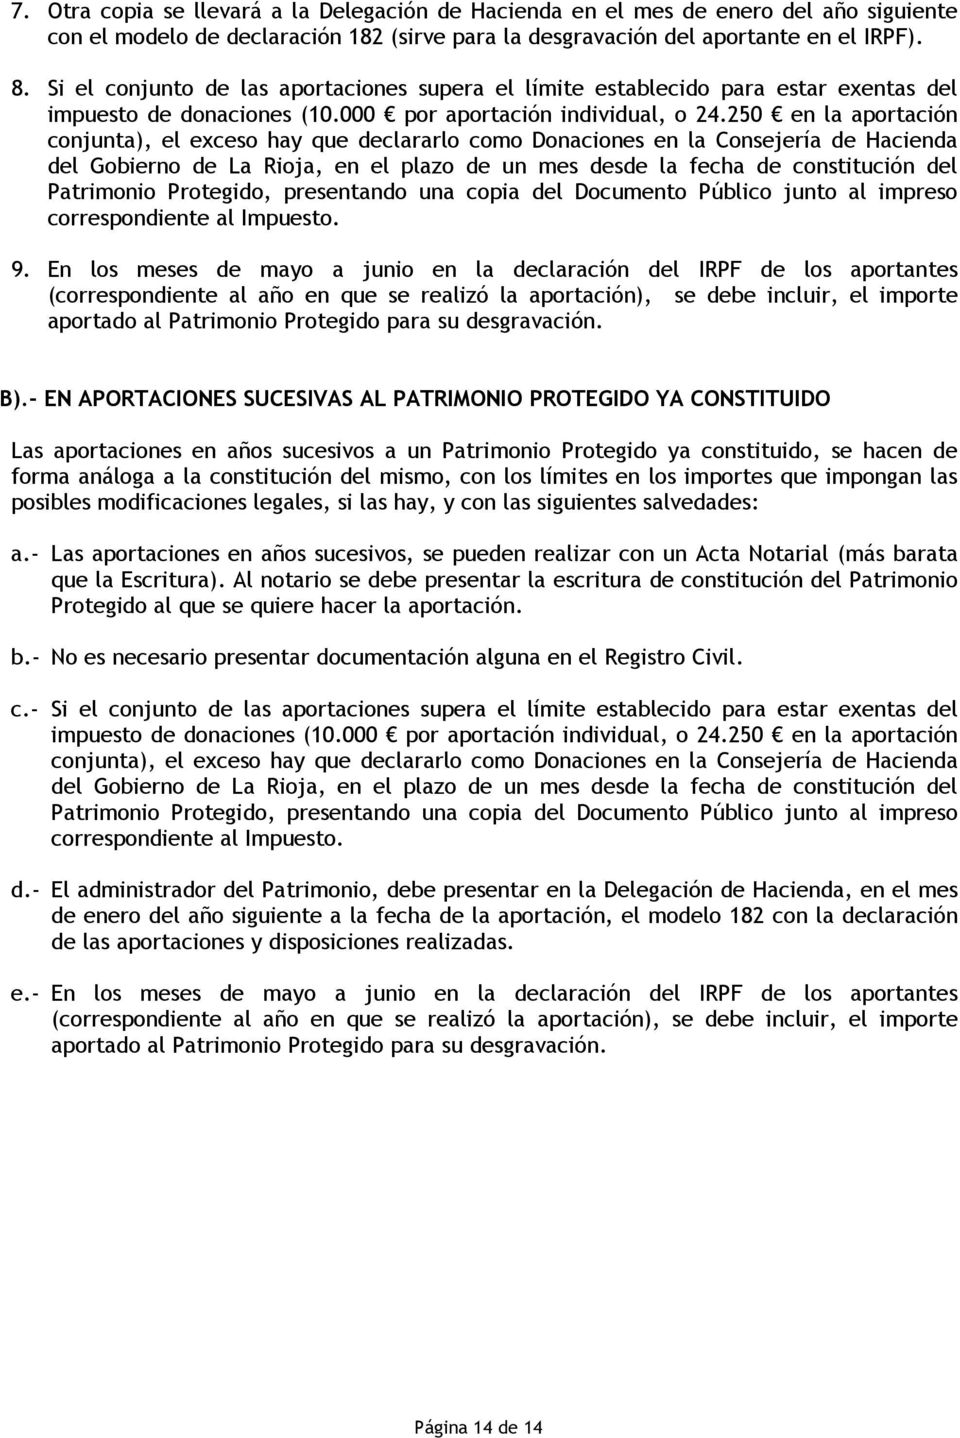 250 en la aportación conjunta), el exceso hay que declararlo como Donaciones en la Consejería de Hacienda del Gobierno de La Rioja, en el plazo de un mes desde la fecha de constitución del Patrimonio